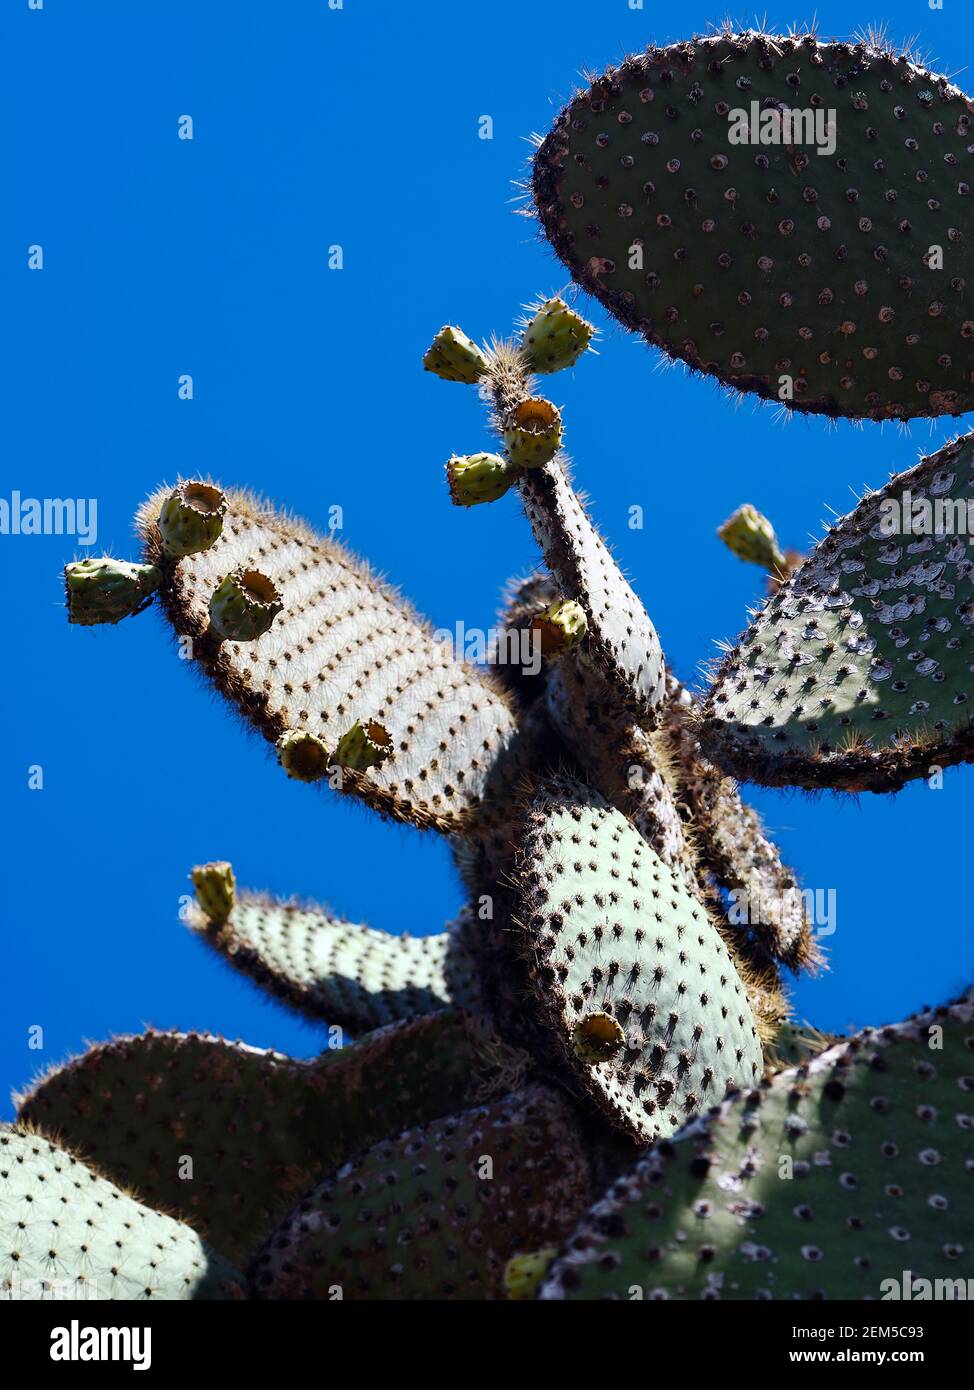 Cactus d'arbre, beaucoup de longues épines, Opuntia, gros plan, coussinets charnus, Boutons floraux, nature, végétation désertique, Amérique du Sud; îles Galapagos; Isla Santa Cr Banque D'Images